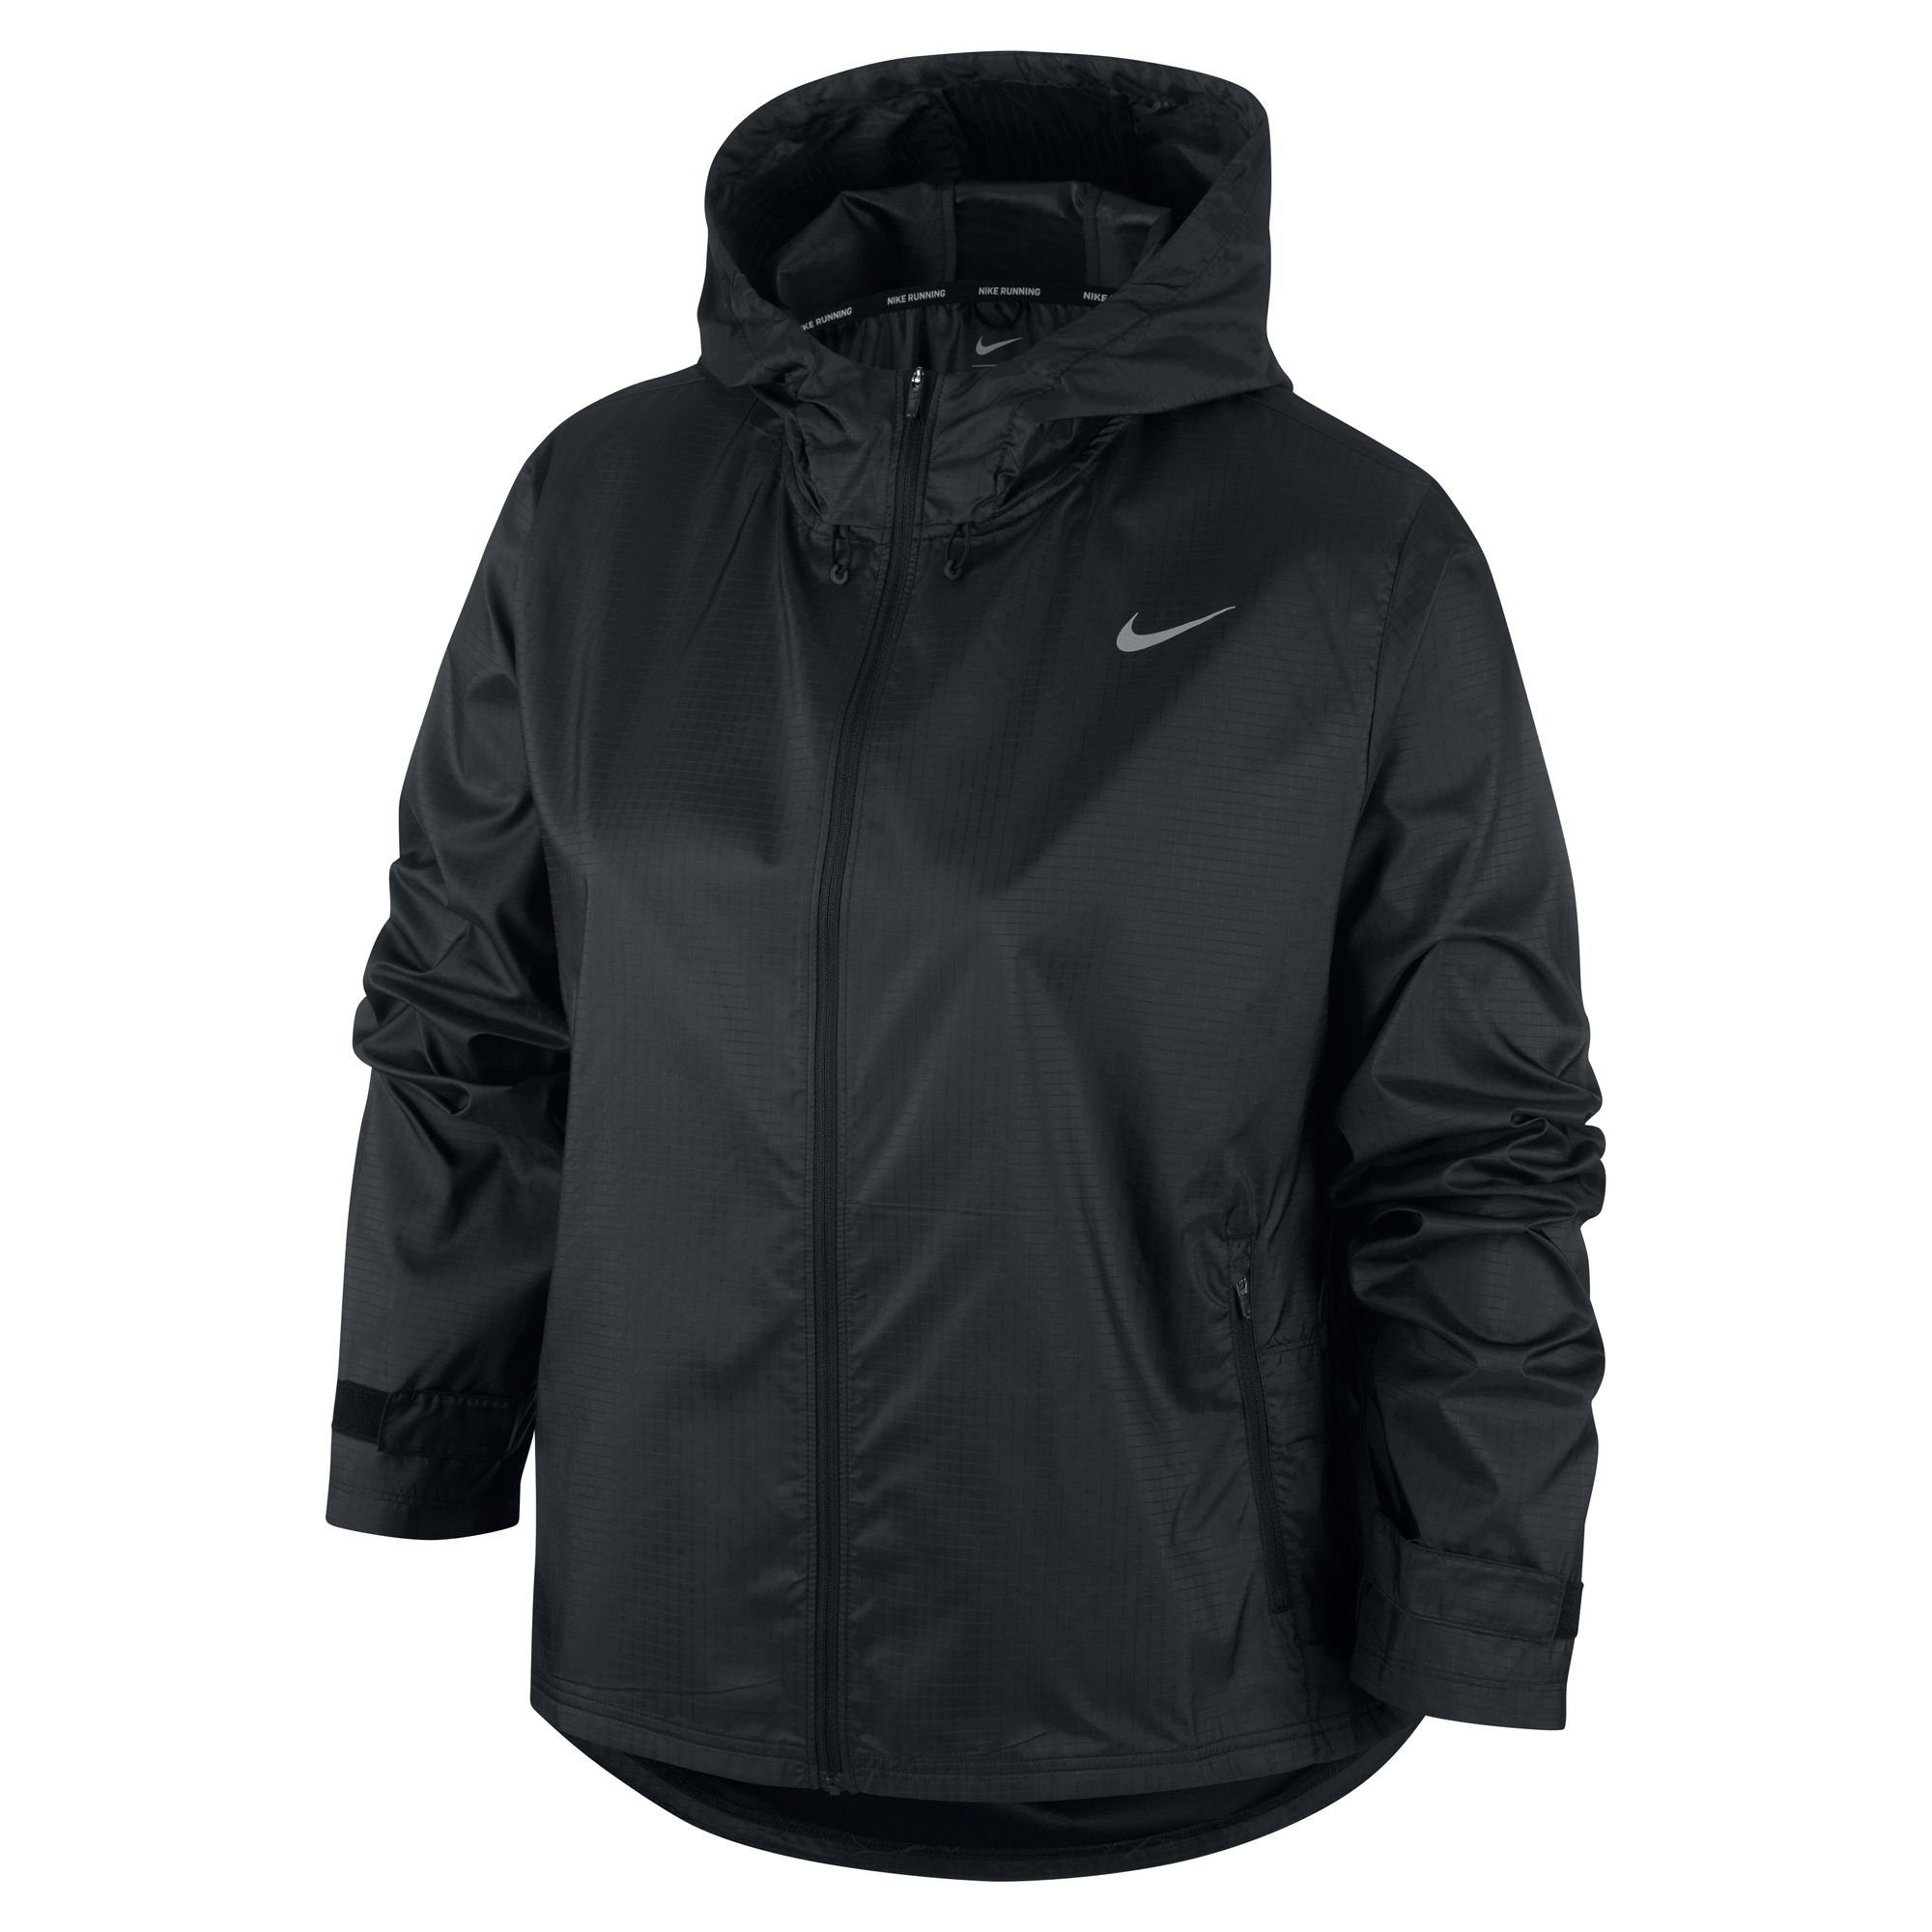 Jacket schwarz Nike Women's Essential Laufjacke Running